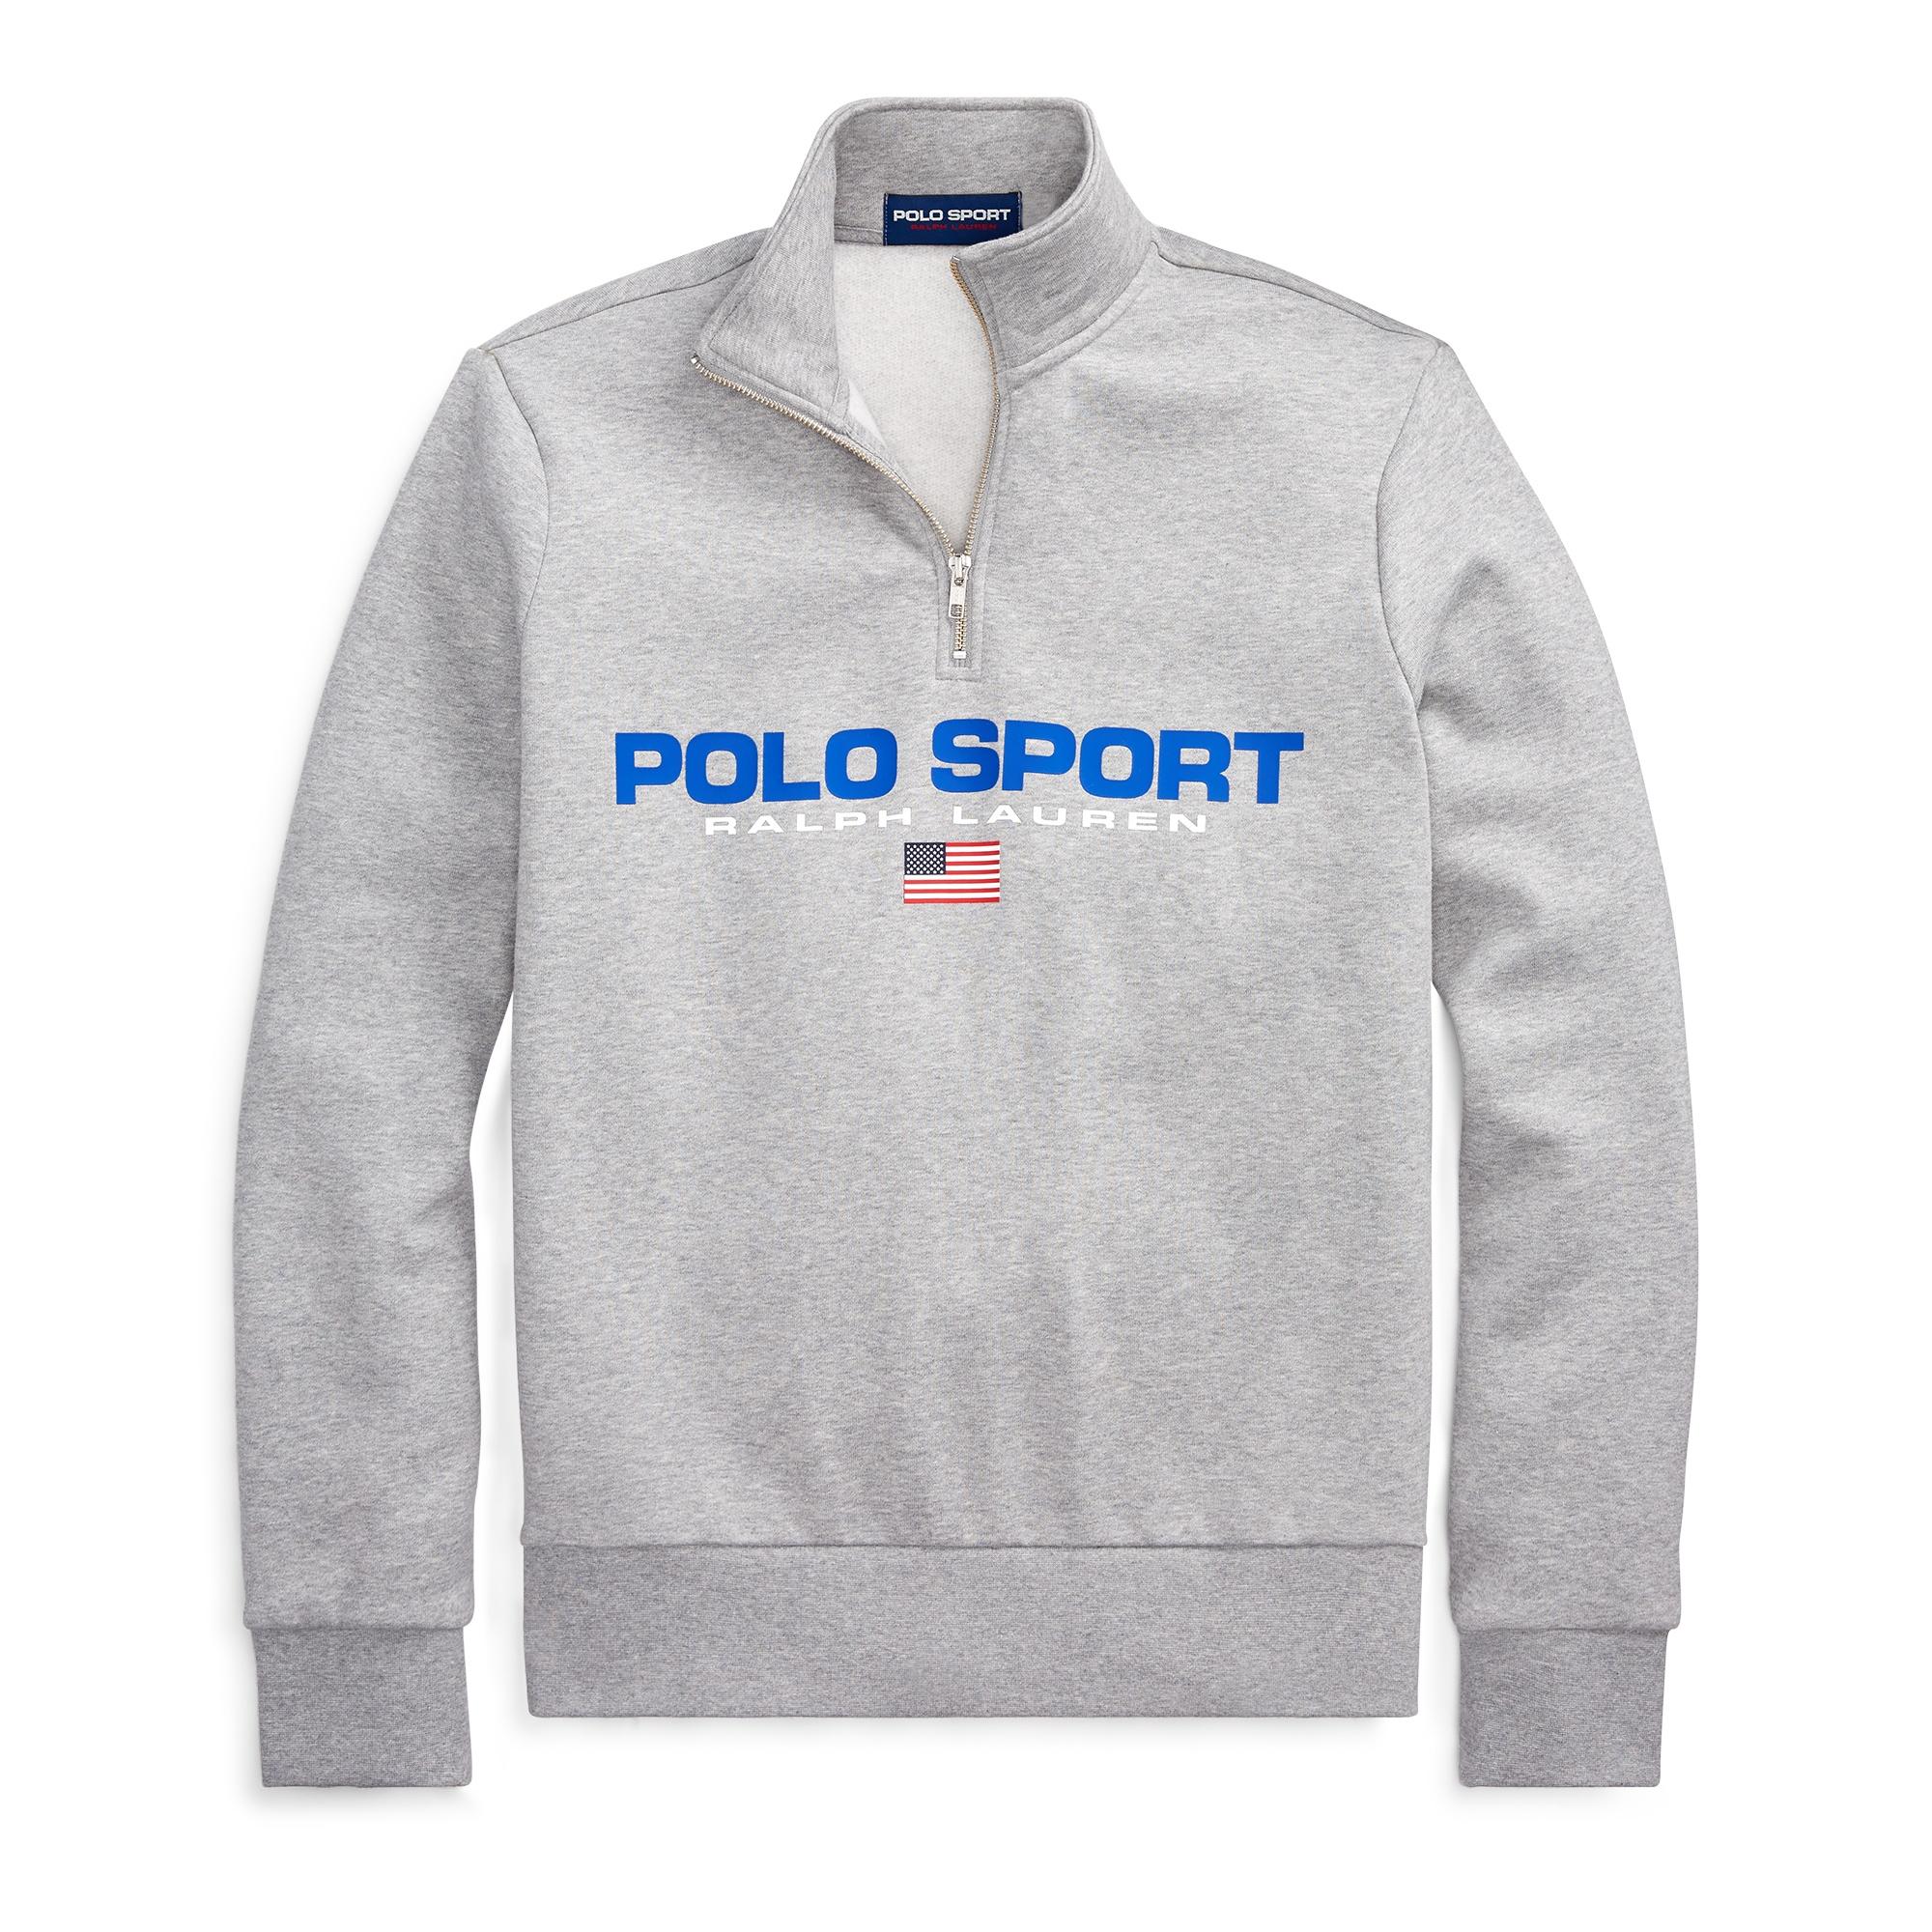 Ralph Lauren Polo Sport Fleece Sweatshirt in Gray for Men - Save 16% - Lyst